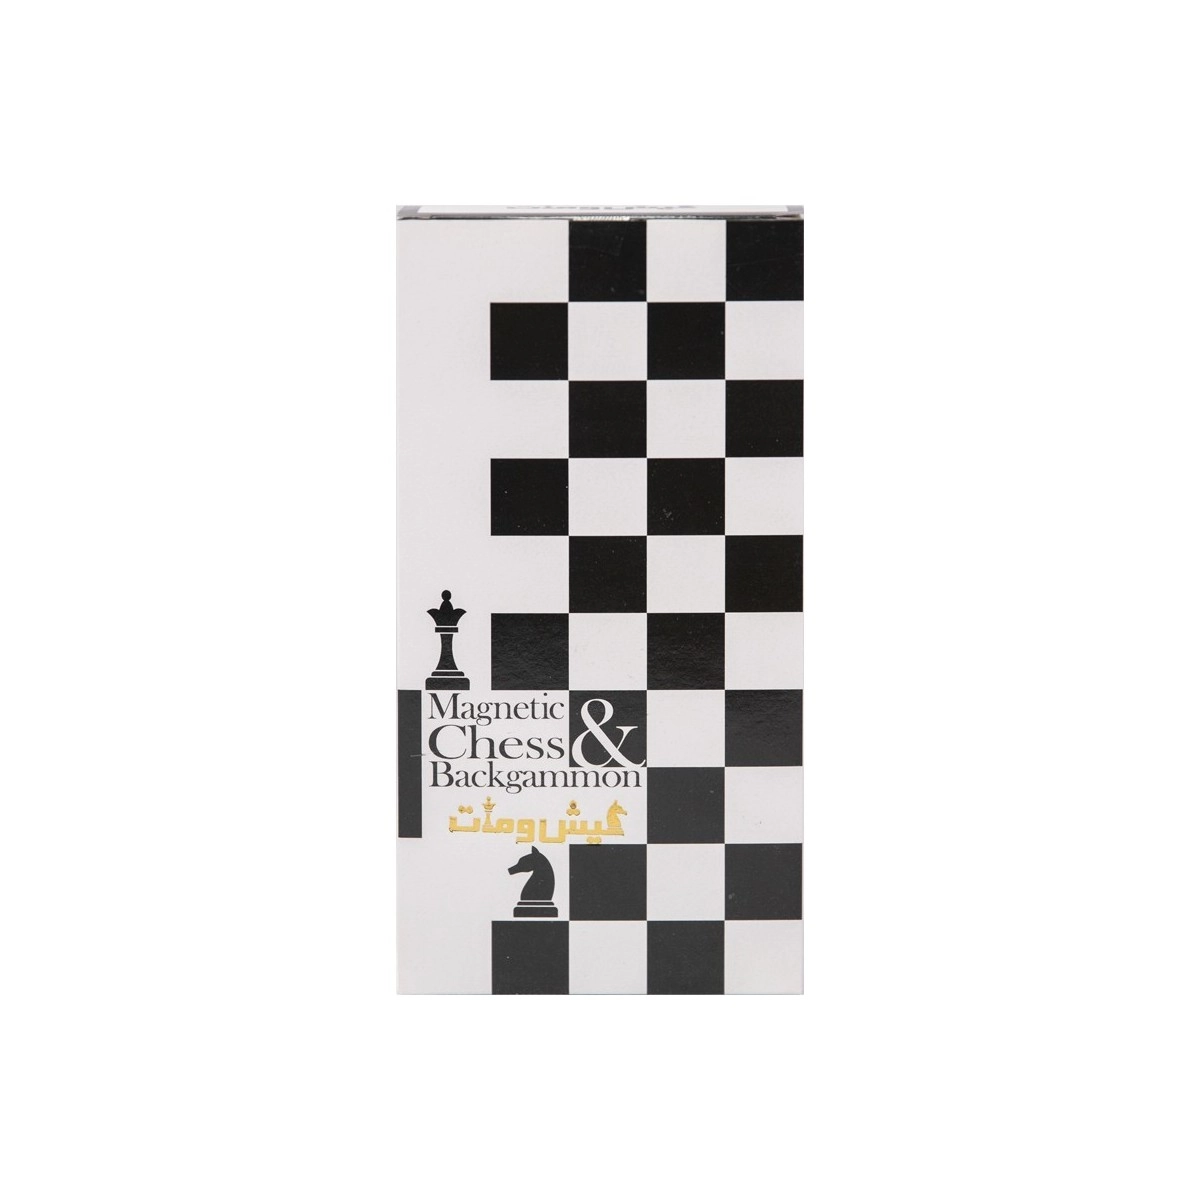 شطرنج و تخته نرد مغناطیسی chess and backgammon